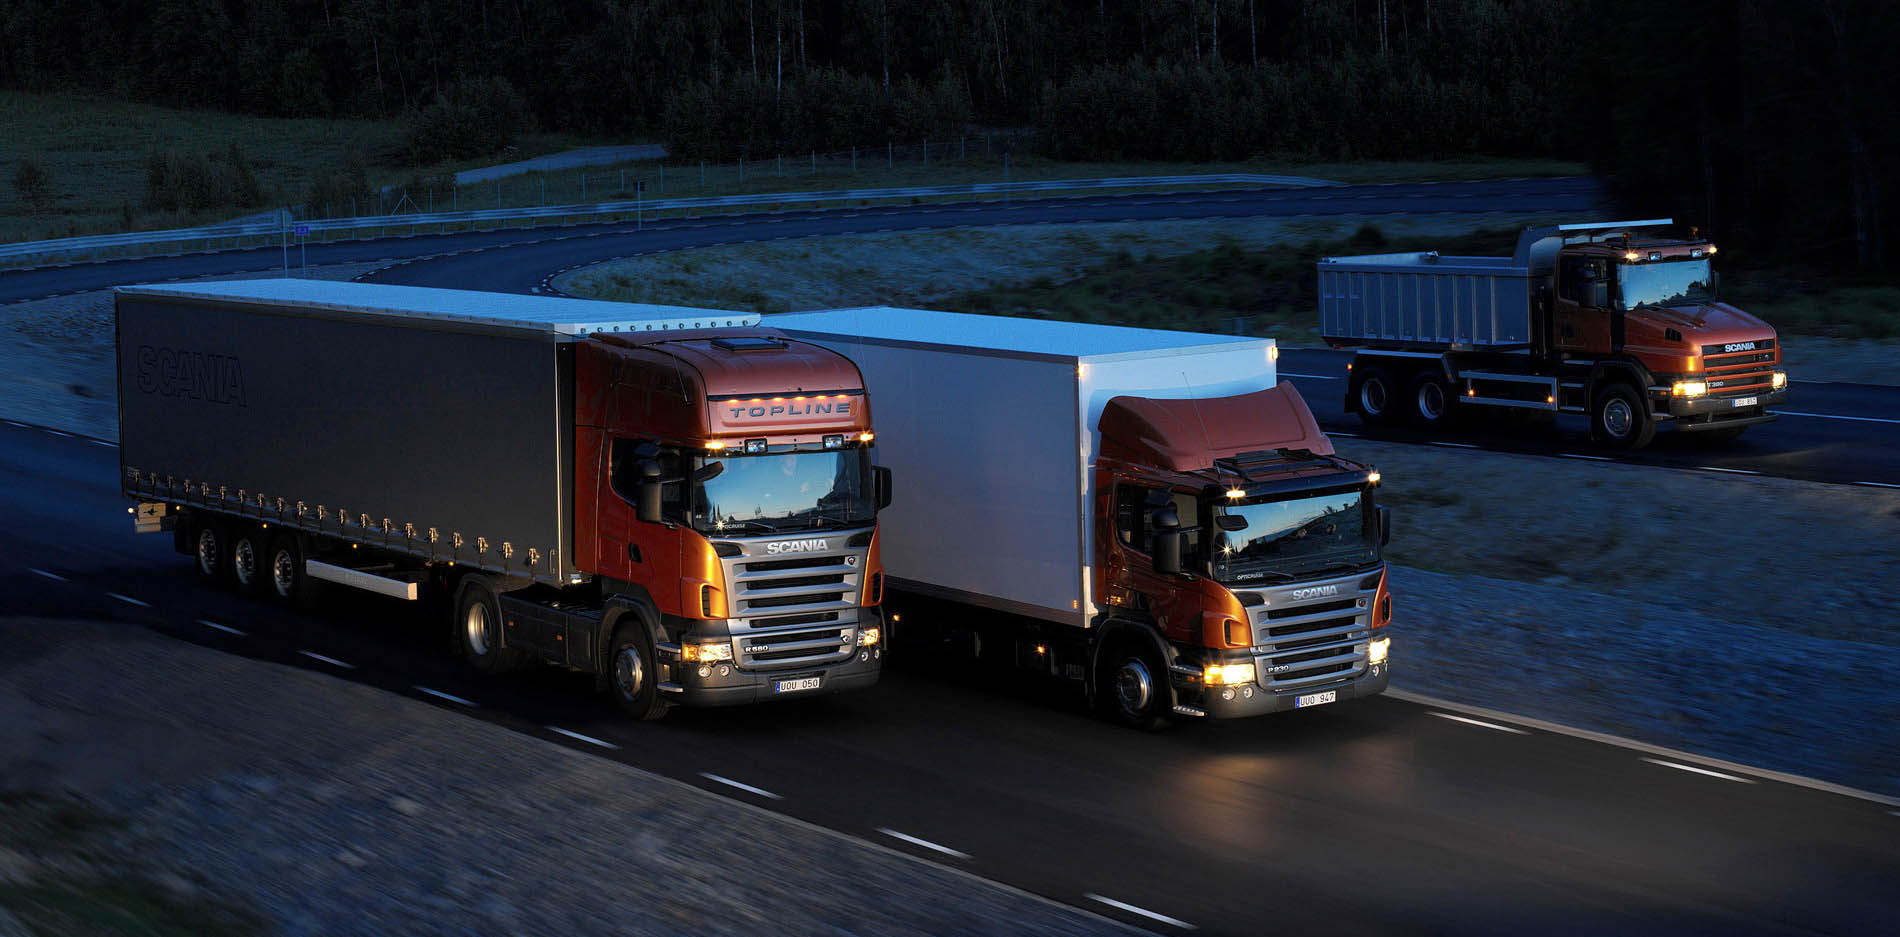 Компания SDV Cargo предлагает качественные логистические услуги на международные автоперевозки и полное профессиональное сопровождение грузов на всех этапах, включая таможенное оформление и декларирование грузов.